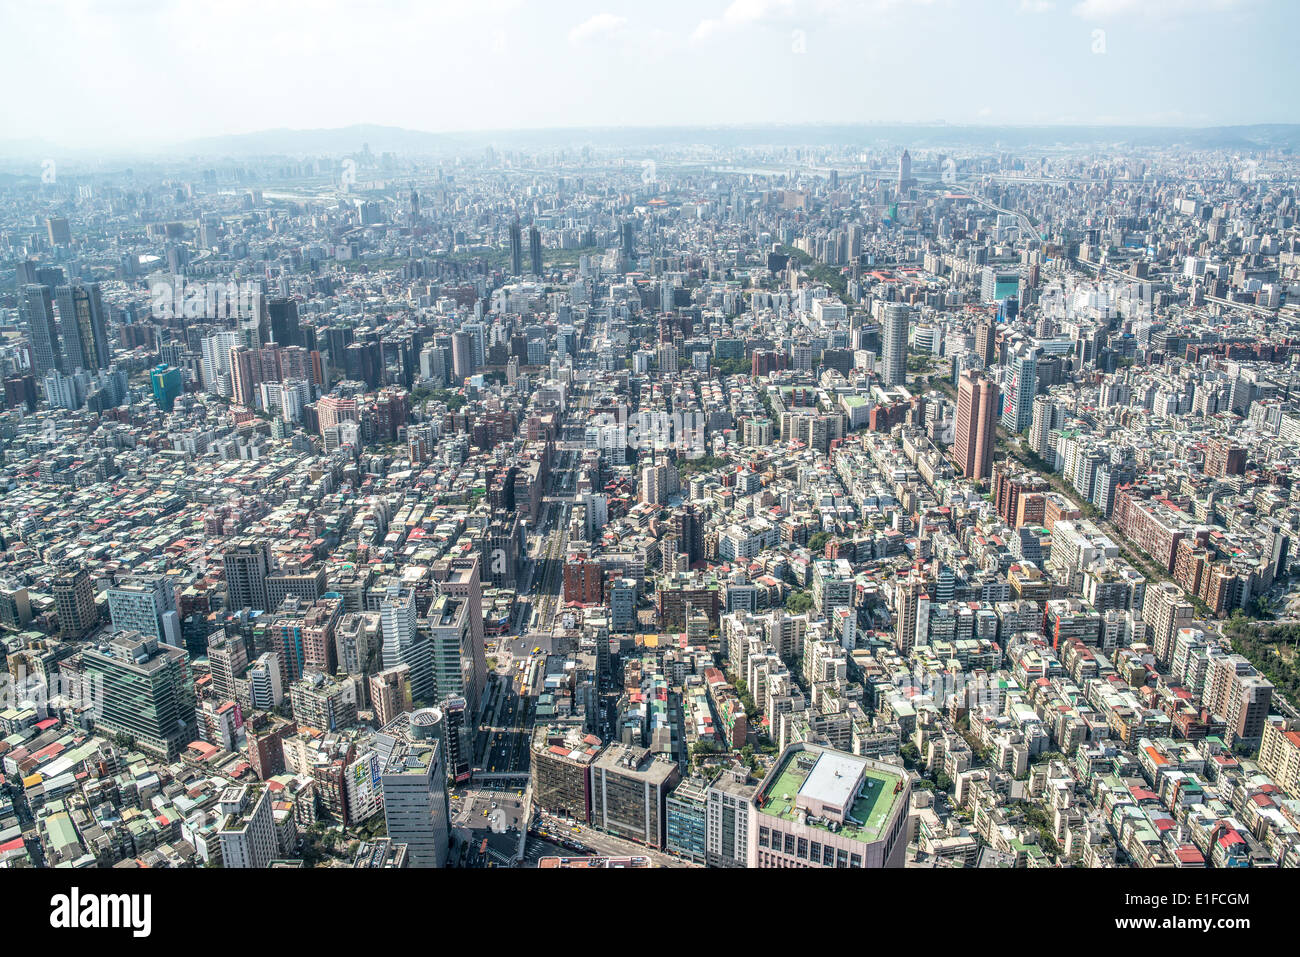 La ville dense grille de Taipei, Taïwan s'étend loin dans la distance comme vu à partir de la 98e étage de Taipei 101. Banque D'Images